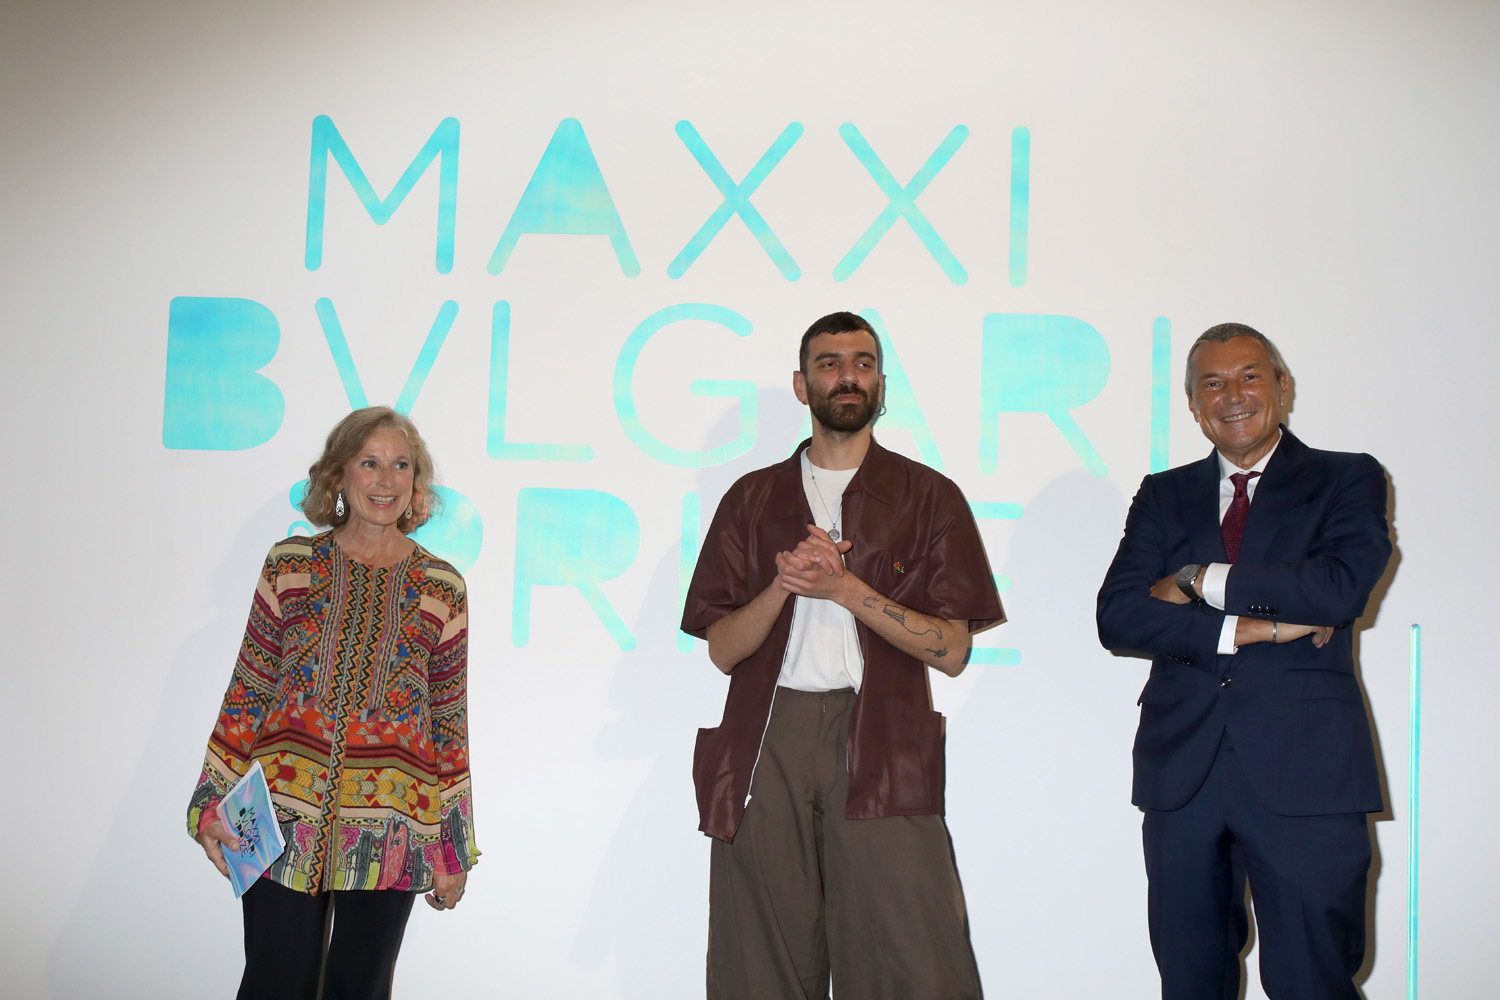 第2回maxxi Bvlgari賞 トマソ デ ルカの受賞が決定 ブルガリ ジャパン株式会社のプレスリリース